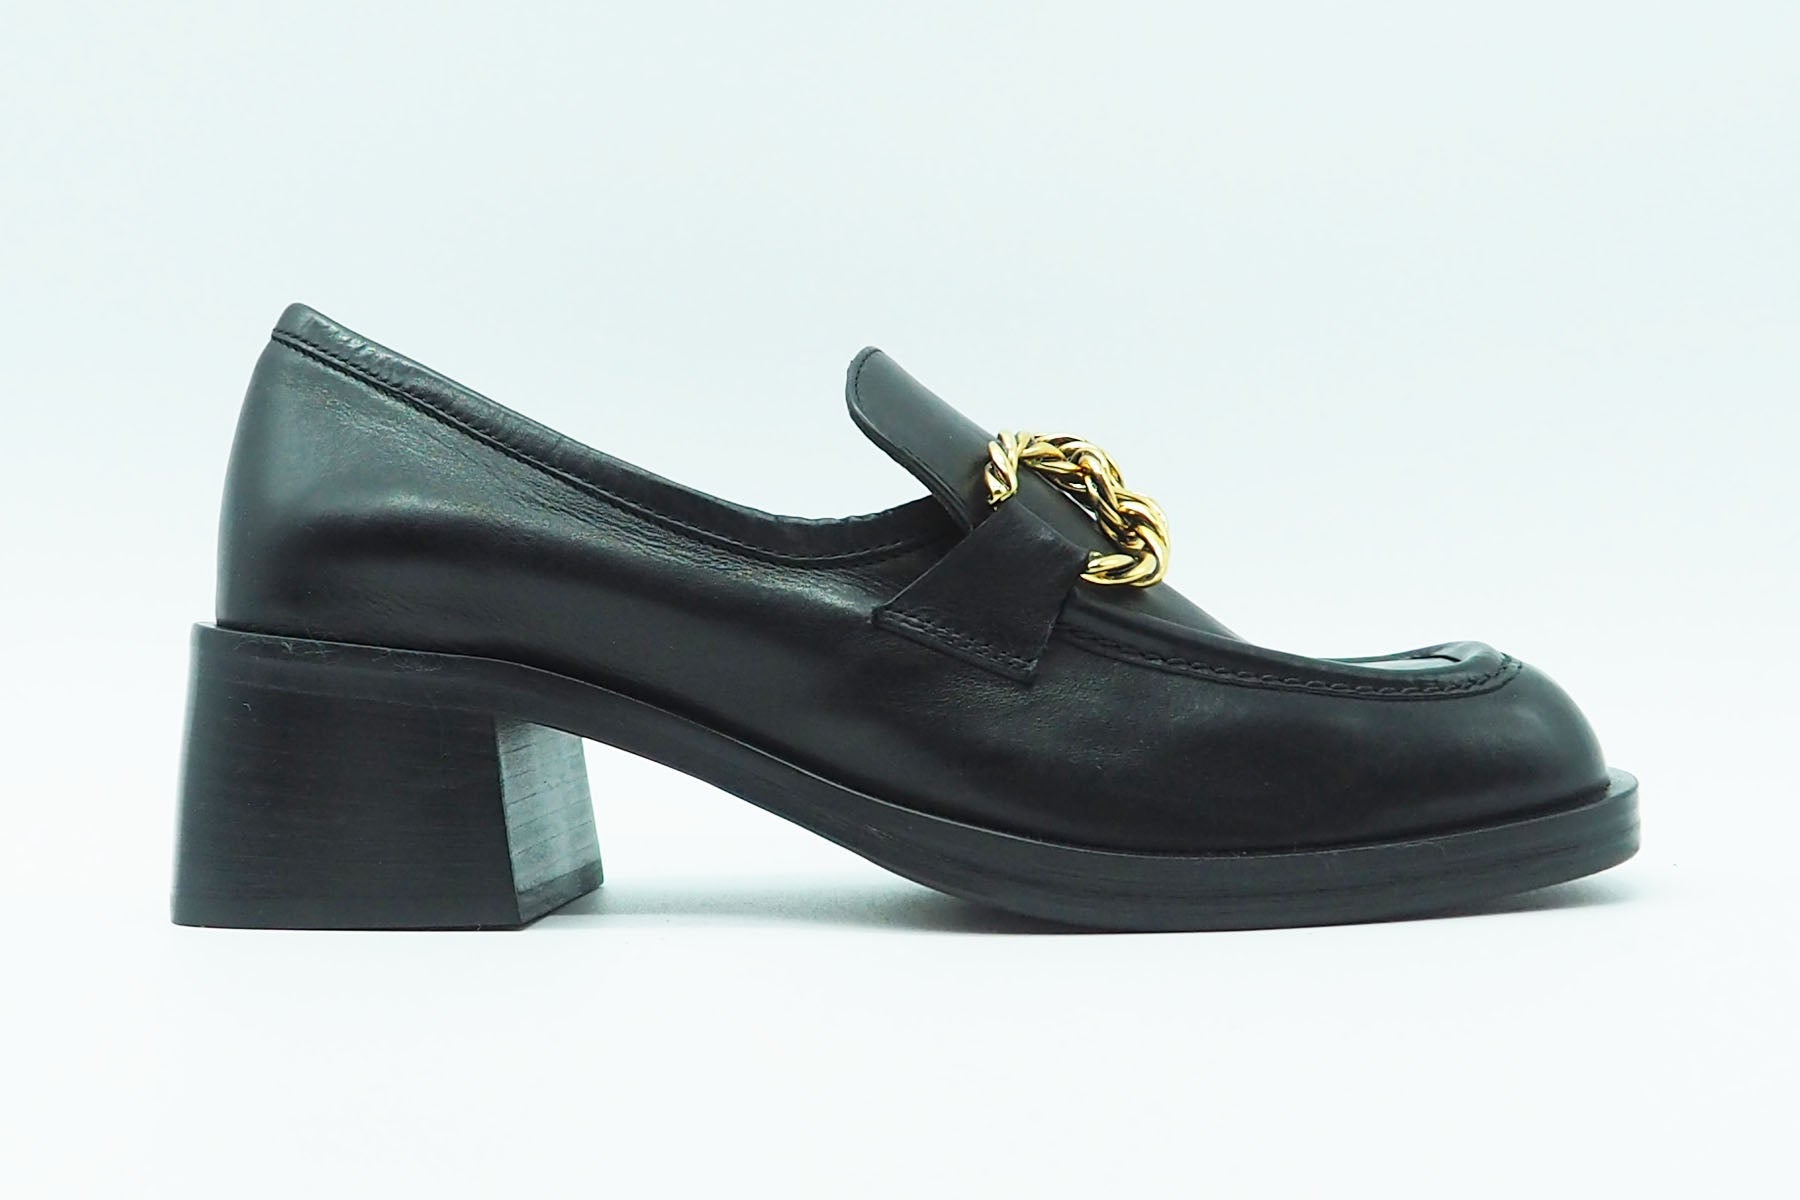 Damen Loafer aus Leder in Schwarz - Absatz 4cm Damen Loafers & Schnürer Mara Bini